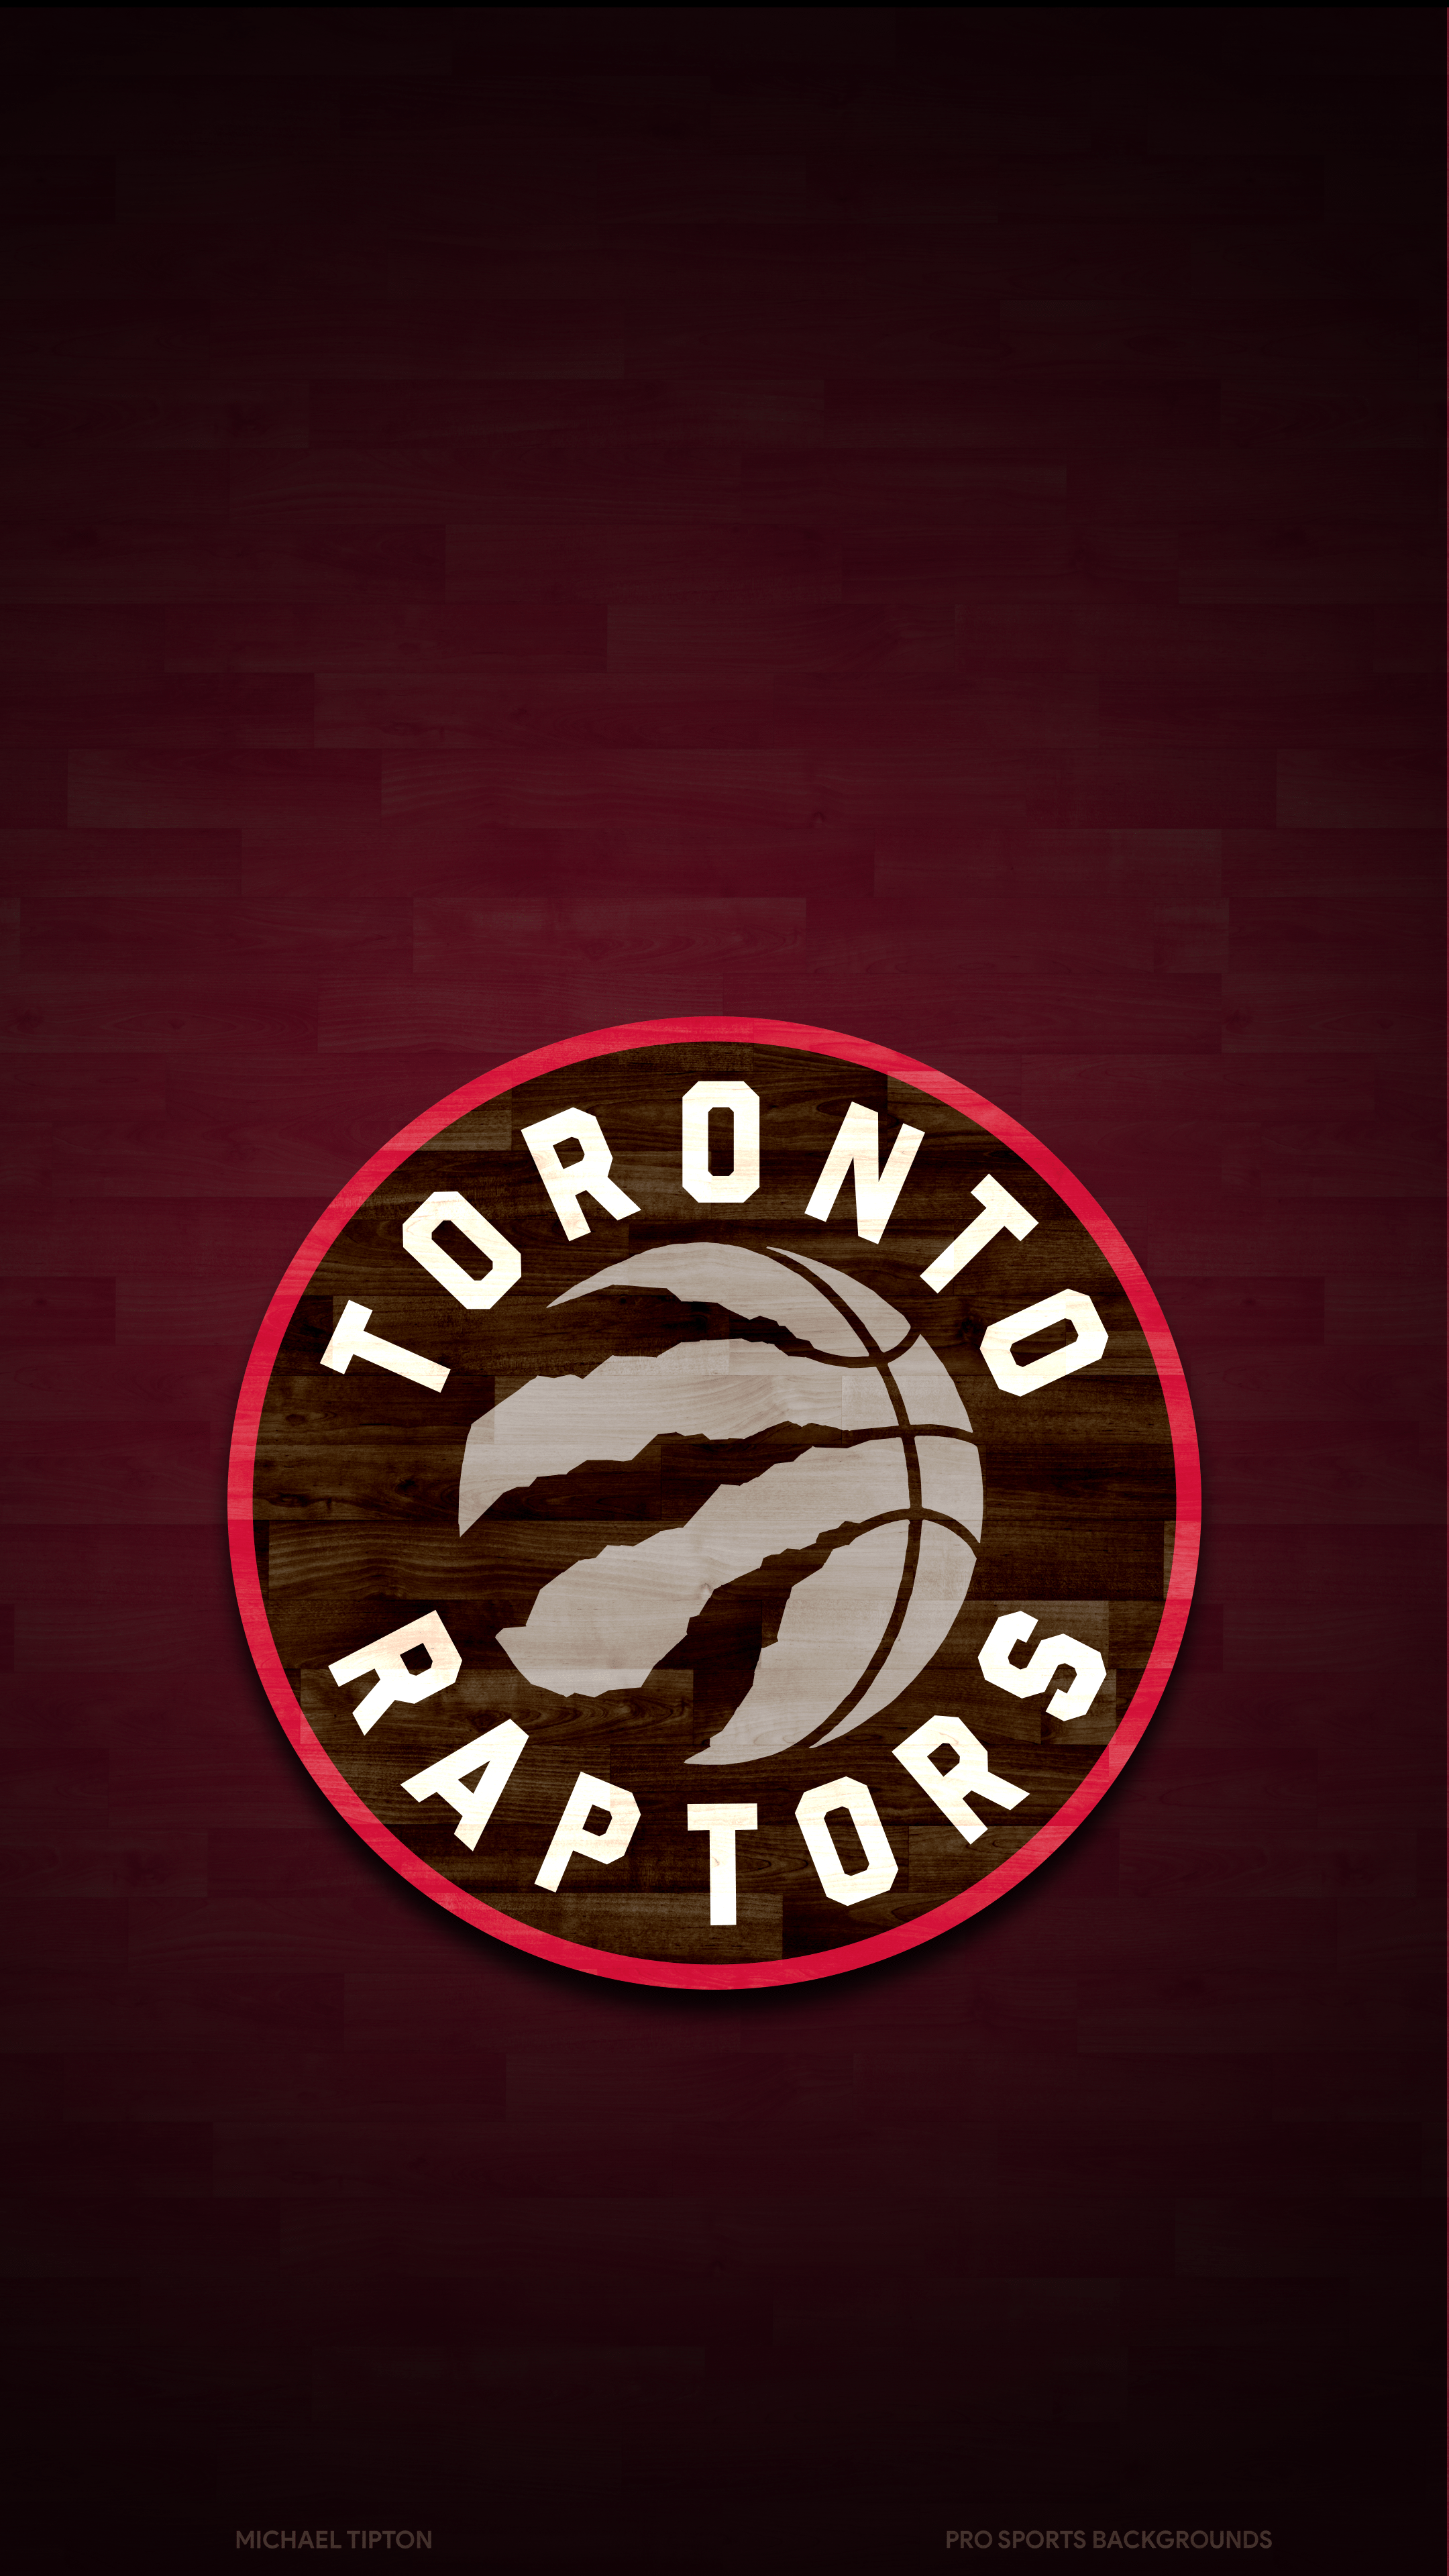 Toronto Raptors Logo Wallpapers - Top